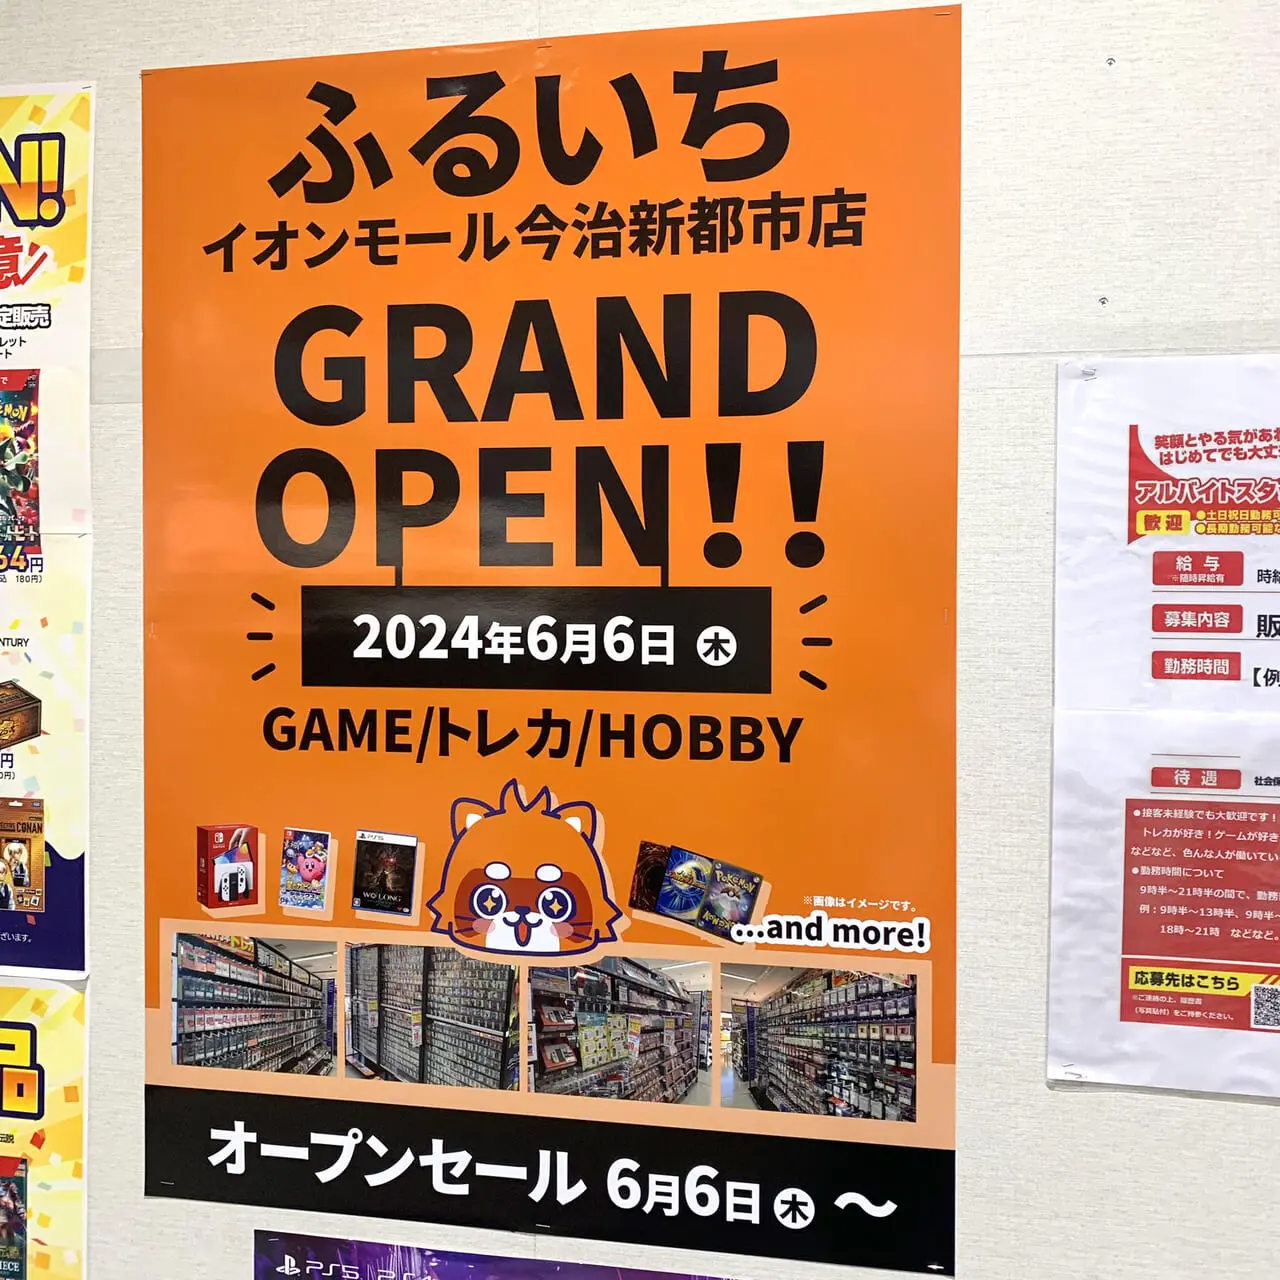 イオンモール今治新都市内に新しいお店がオープン予定!!